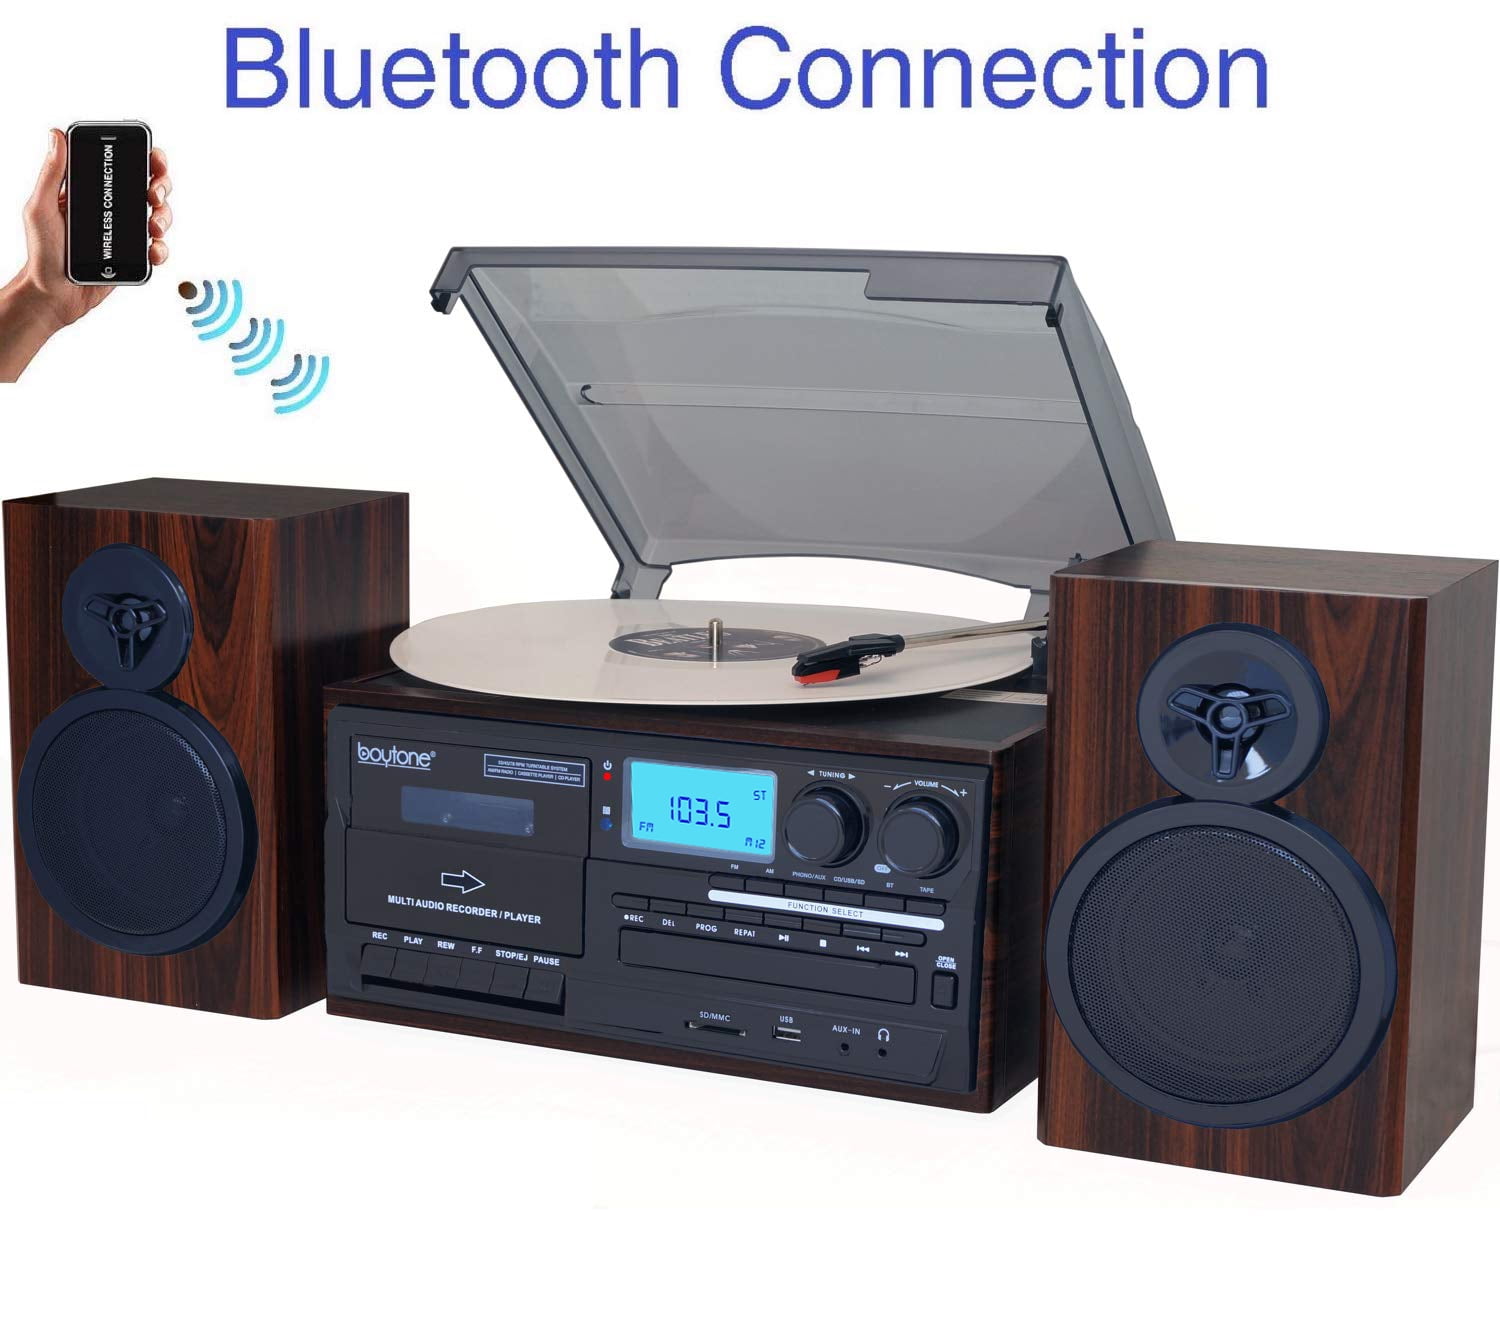 Victrola Bluetooth Radio